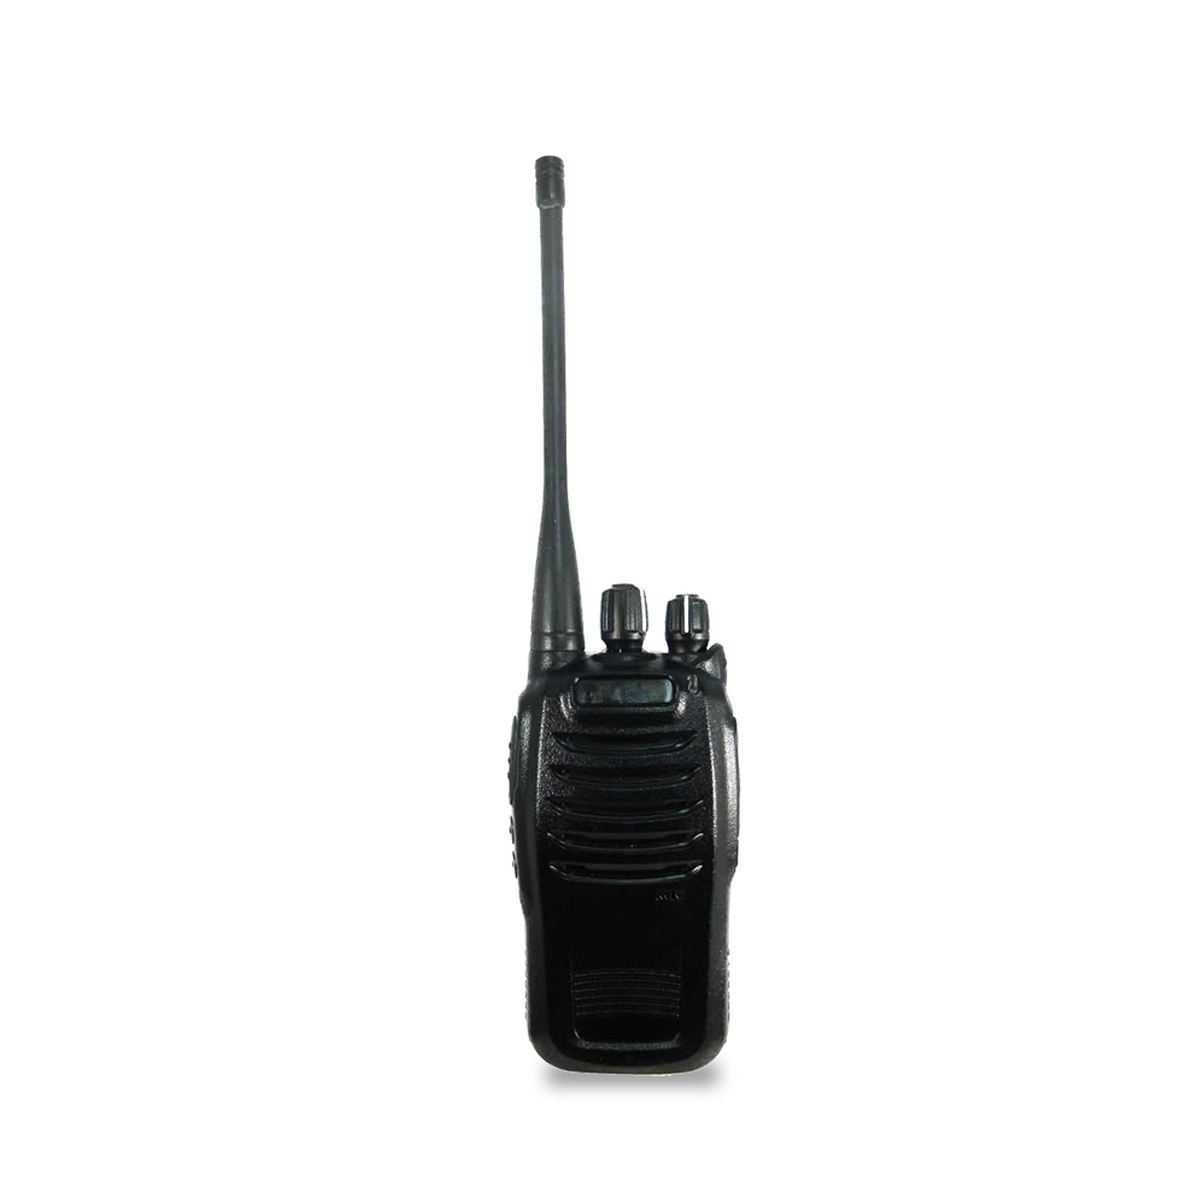 Radio Genérico TH-2800 Analógico UHF 400-470 MHz